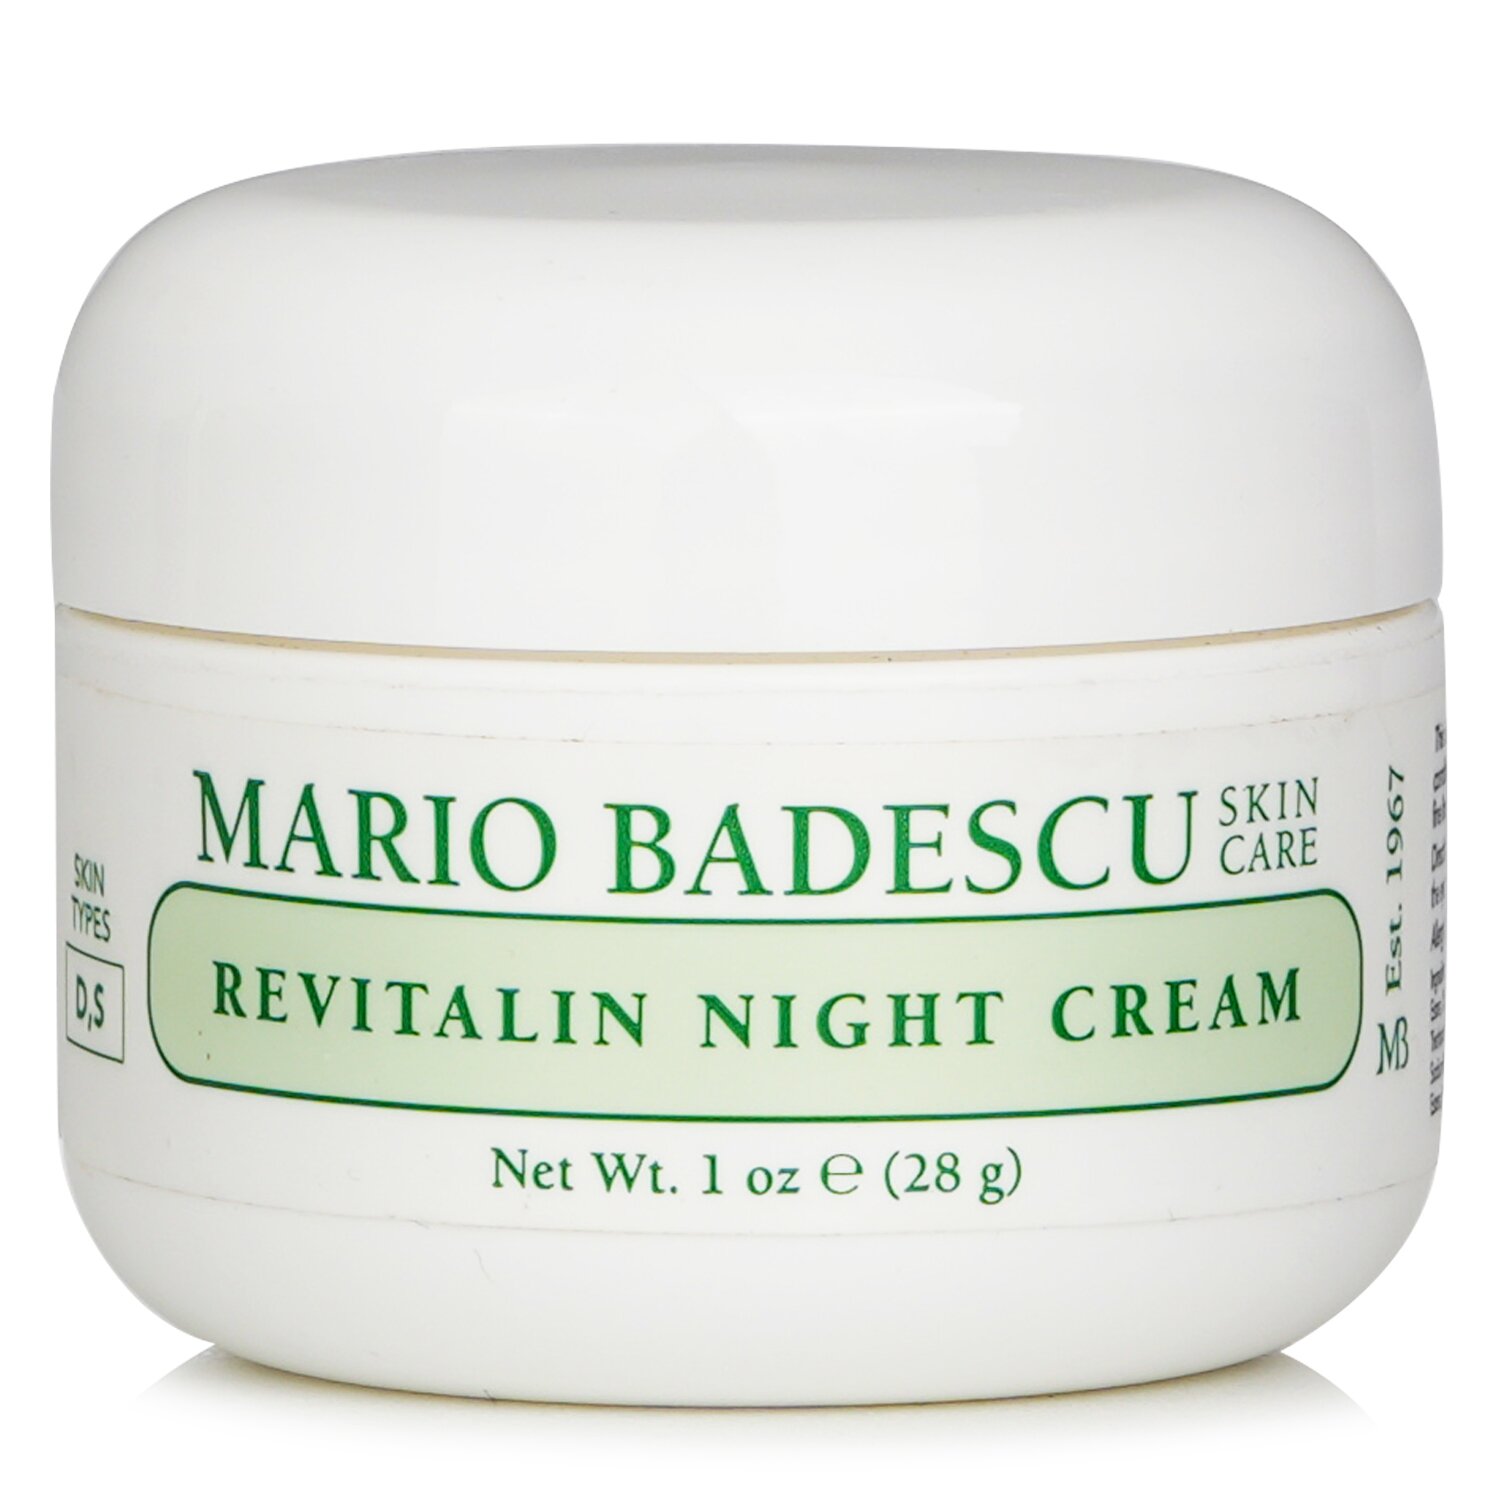 Mario Badescu Revitalin Night Cream 29ml/1oz